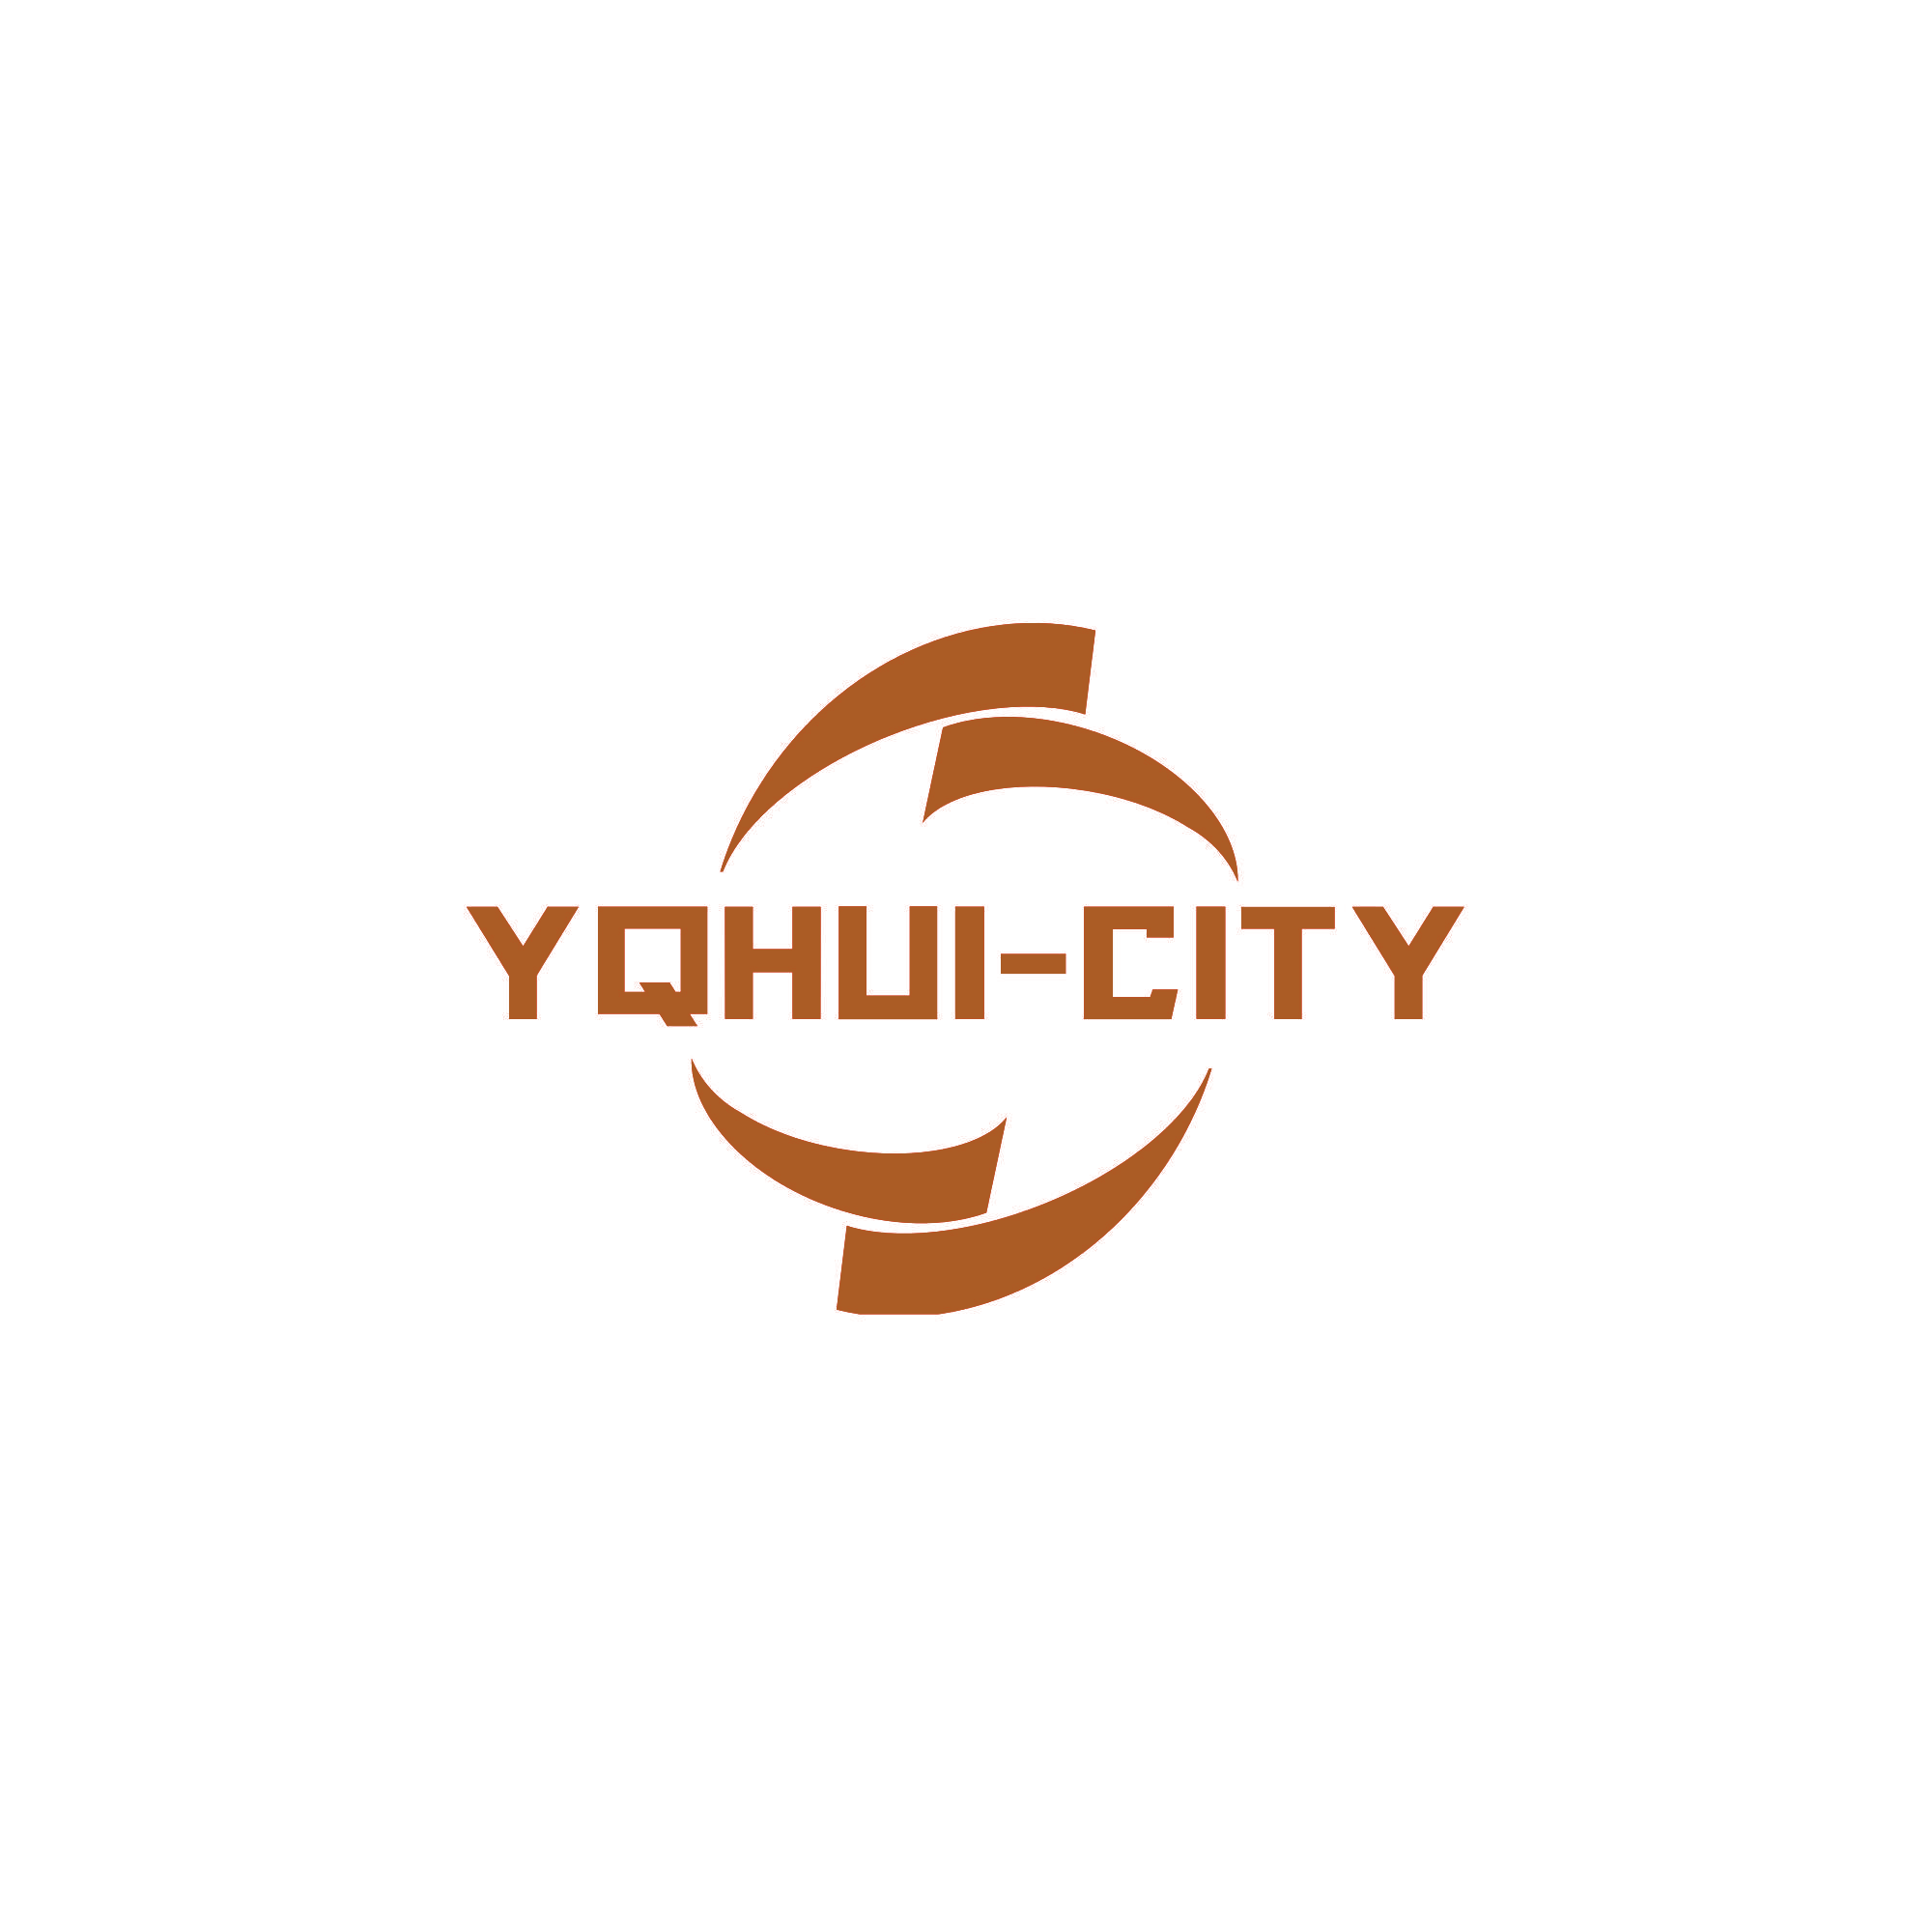 YQHUI-CITY